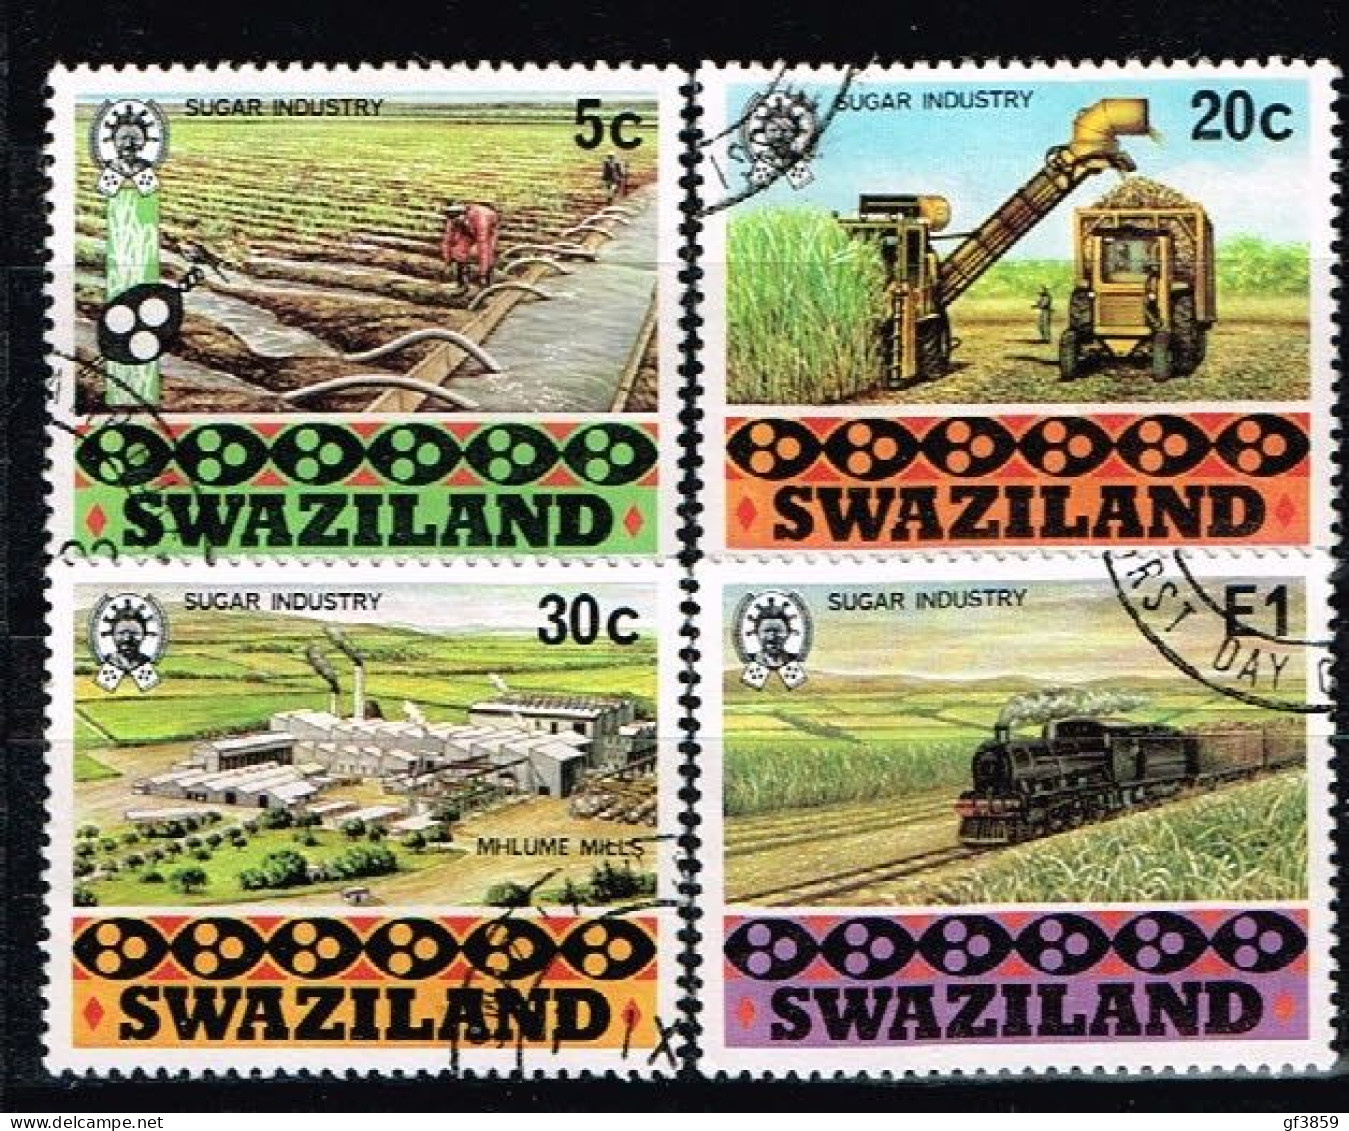 SWAZILAND / Oblitérés /Used / 1982 -  Industrie Sucrière De La Canne A Sucre - Swaziland (1968-...)